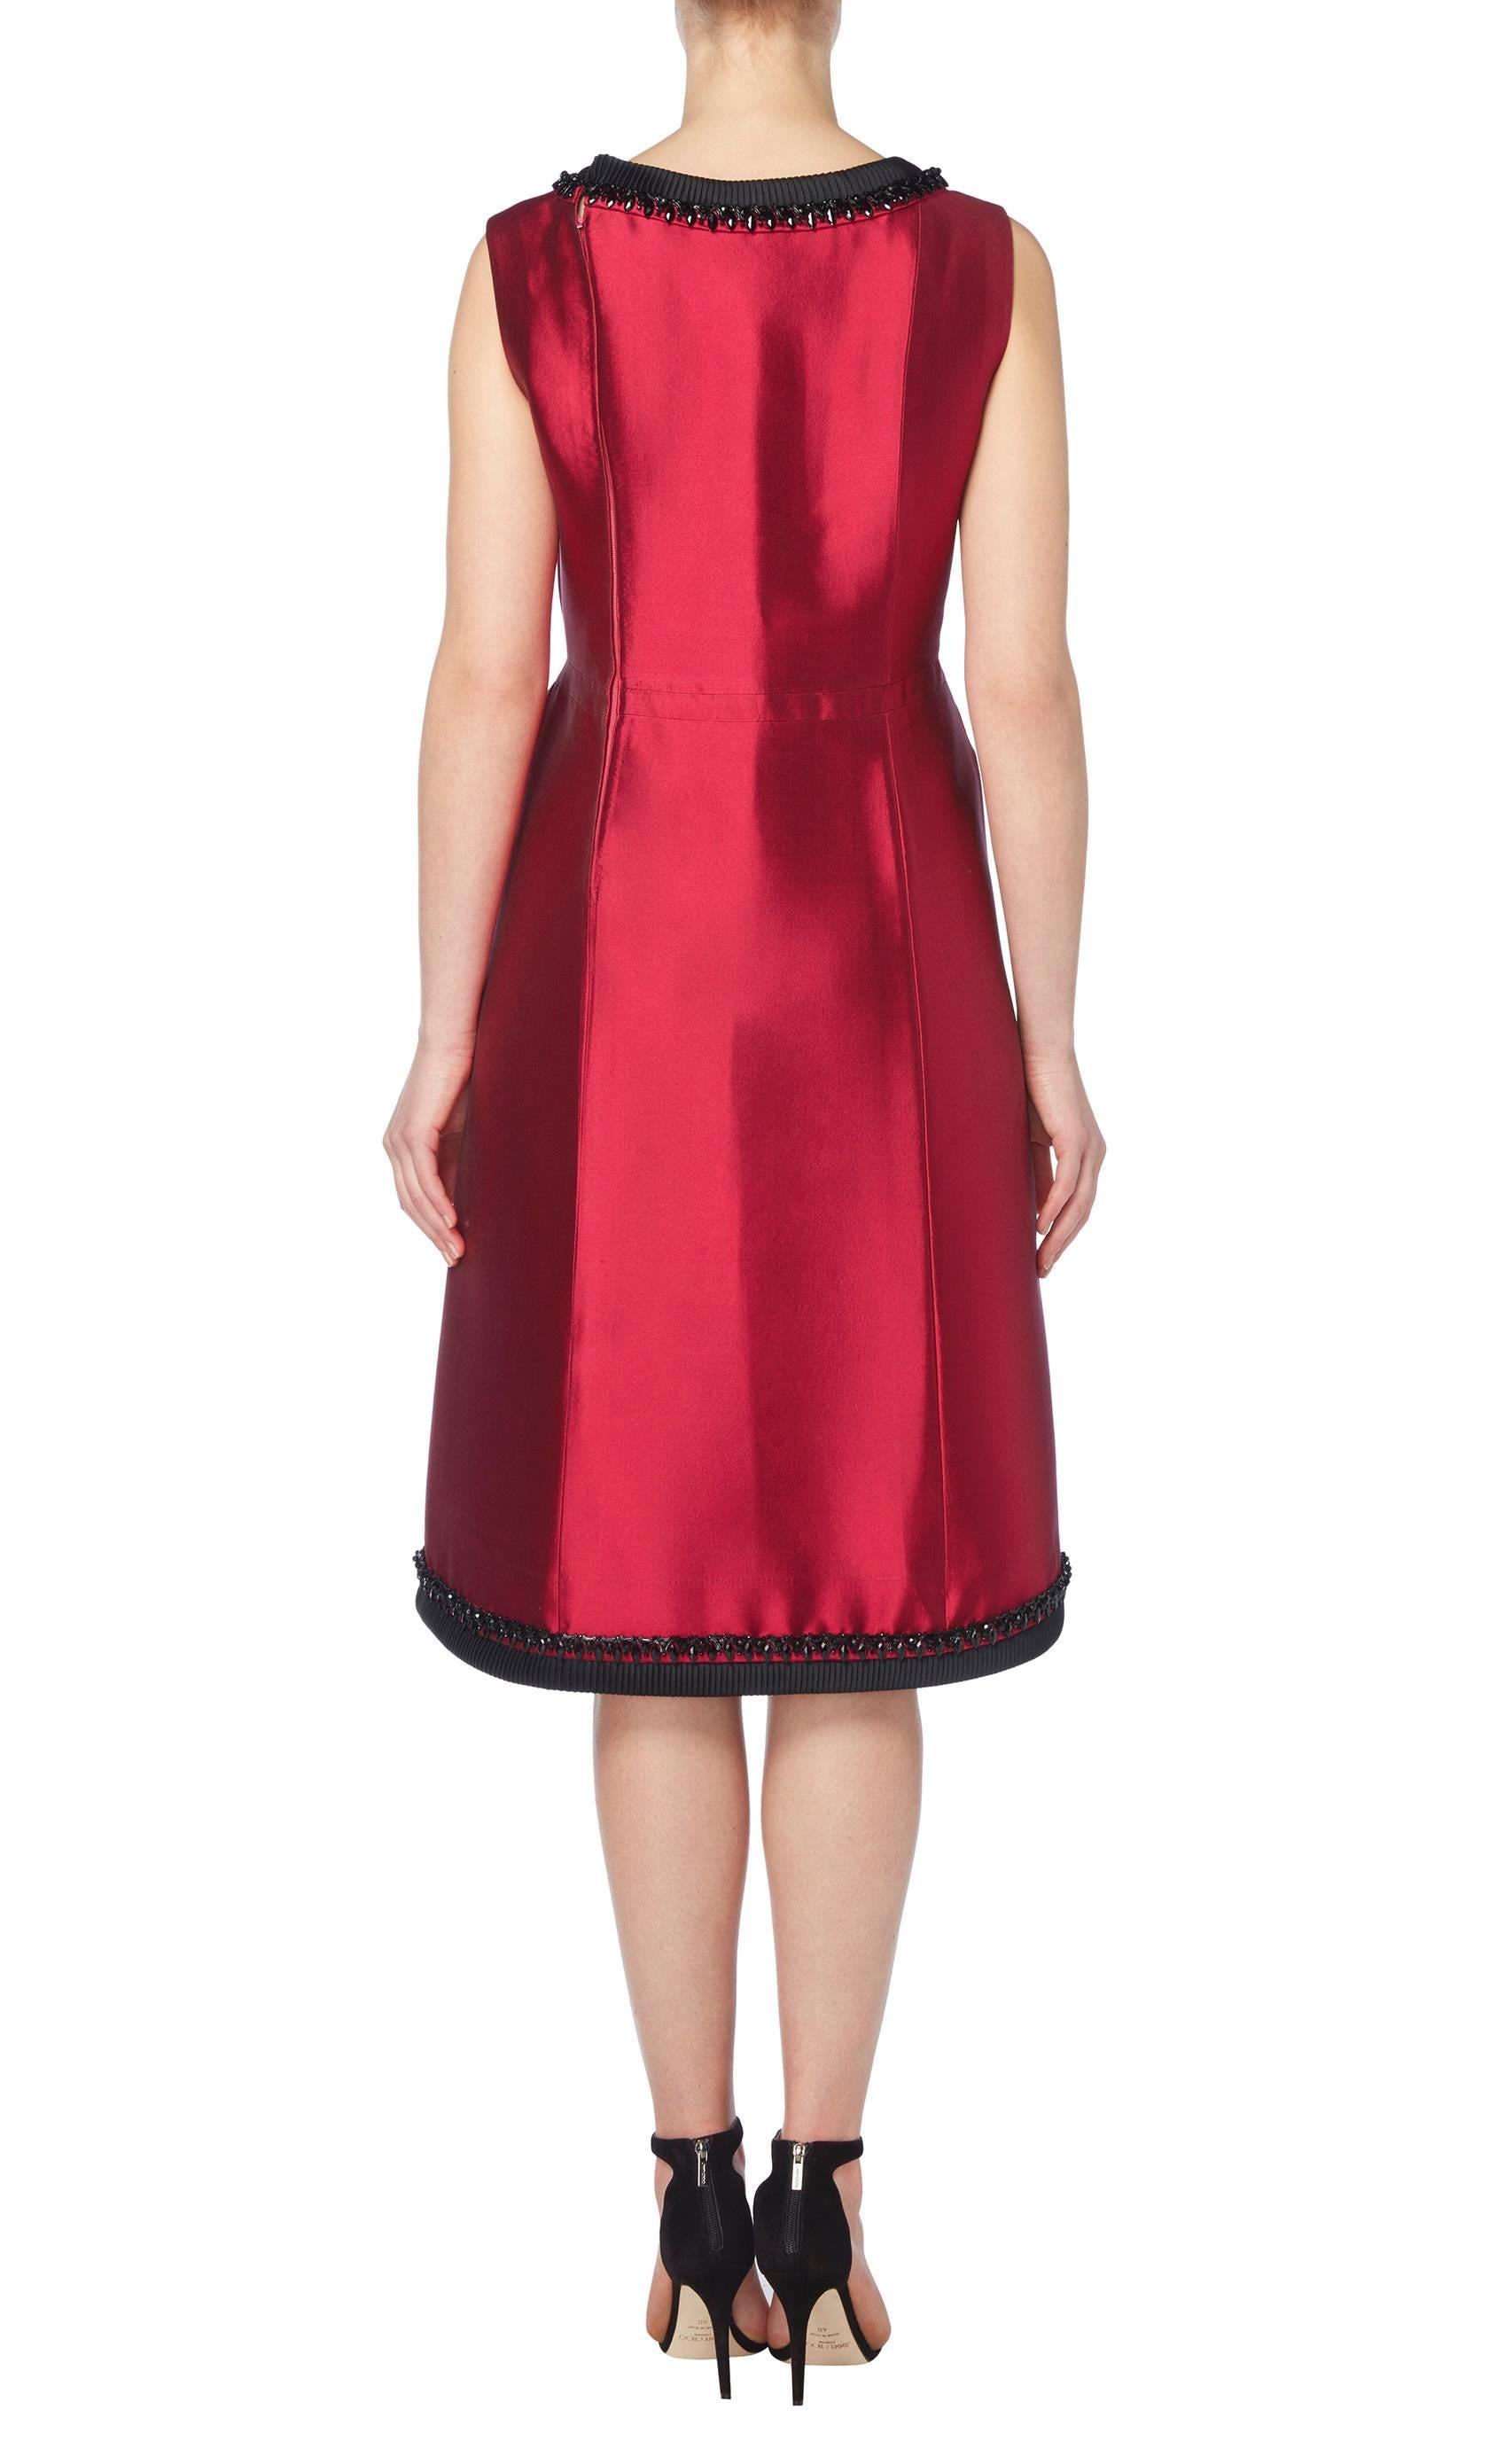 Women's Pierre Balmain haute couture red dress suit, circa 1966 For Sale